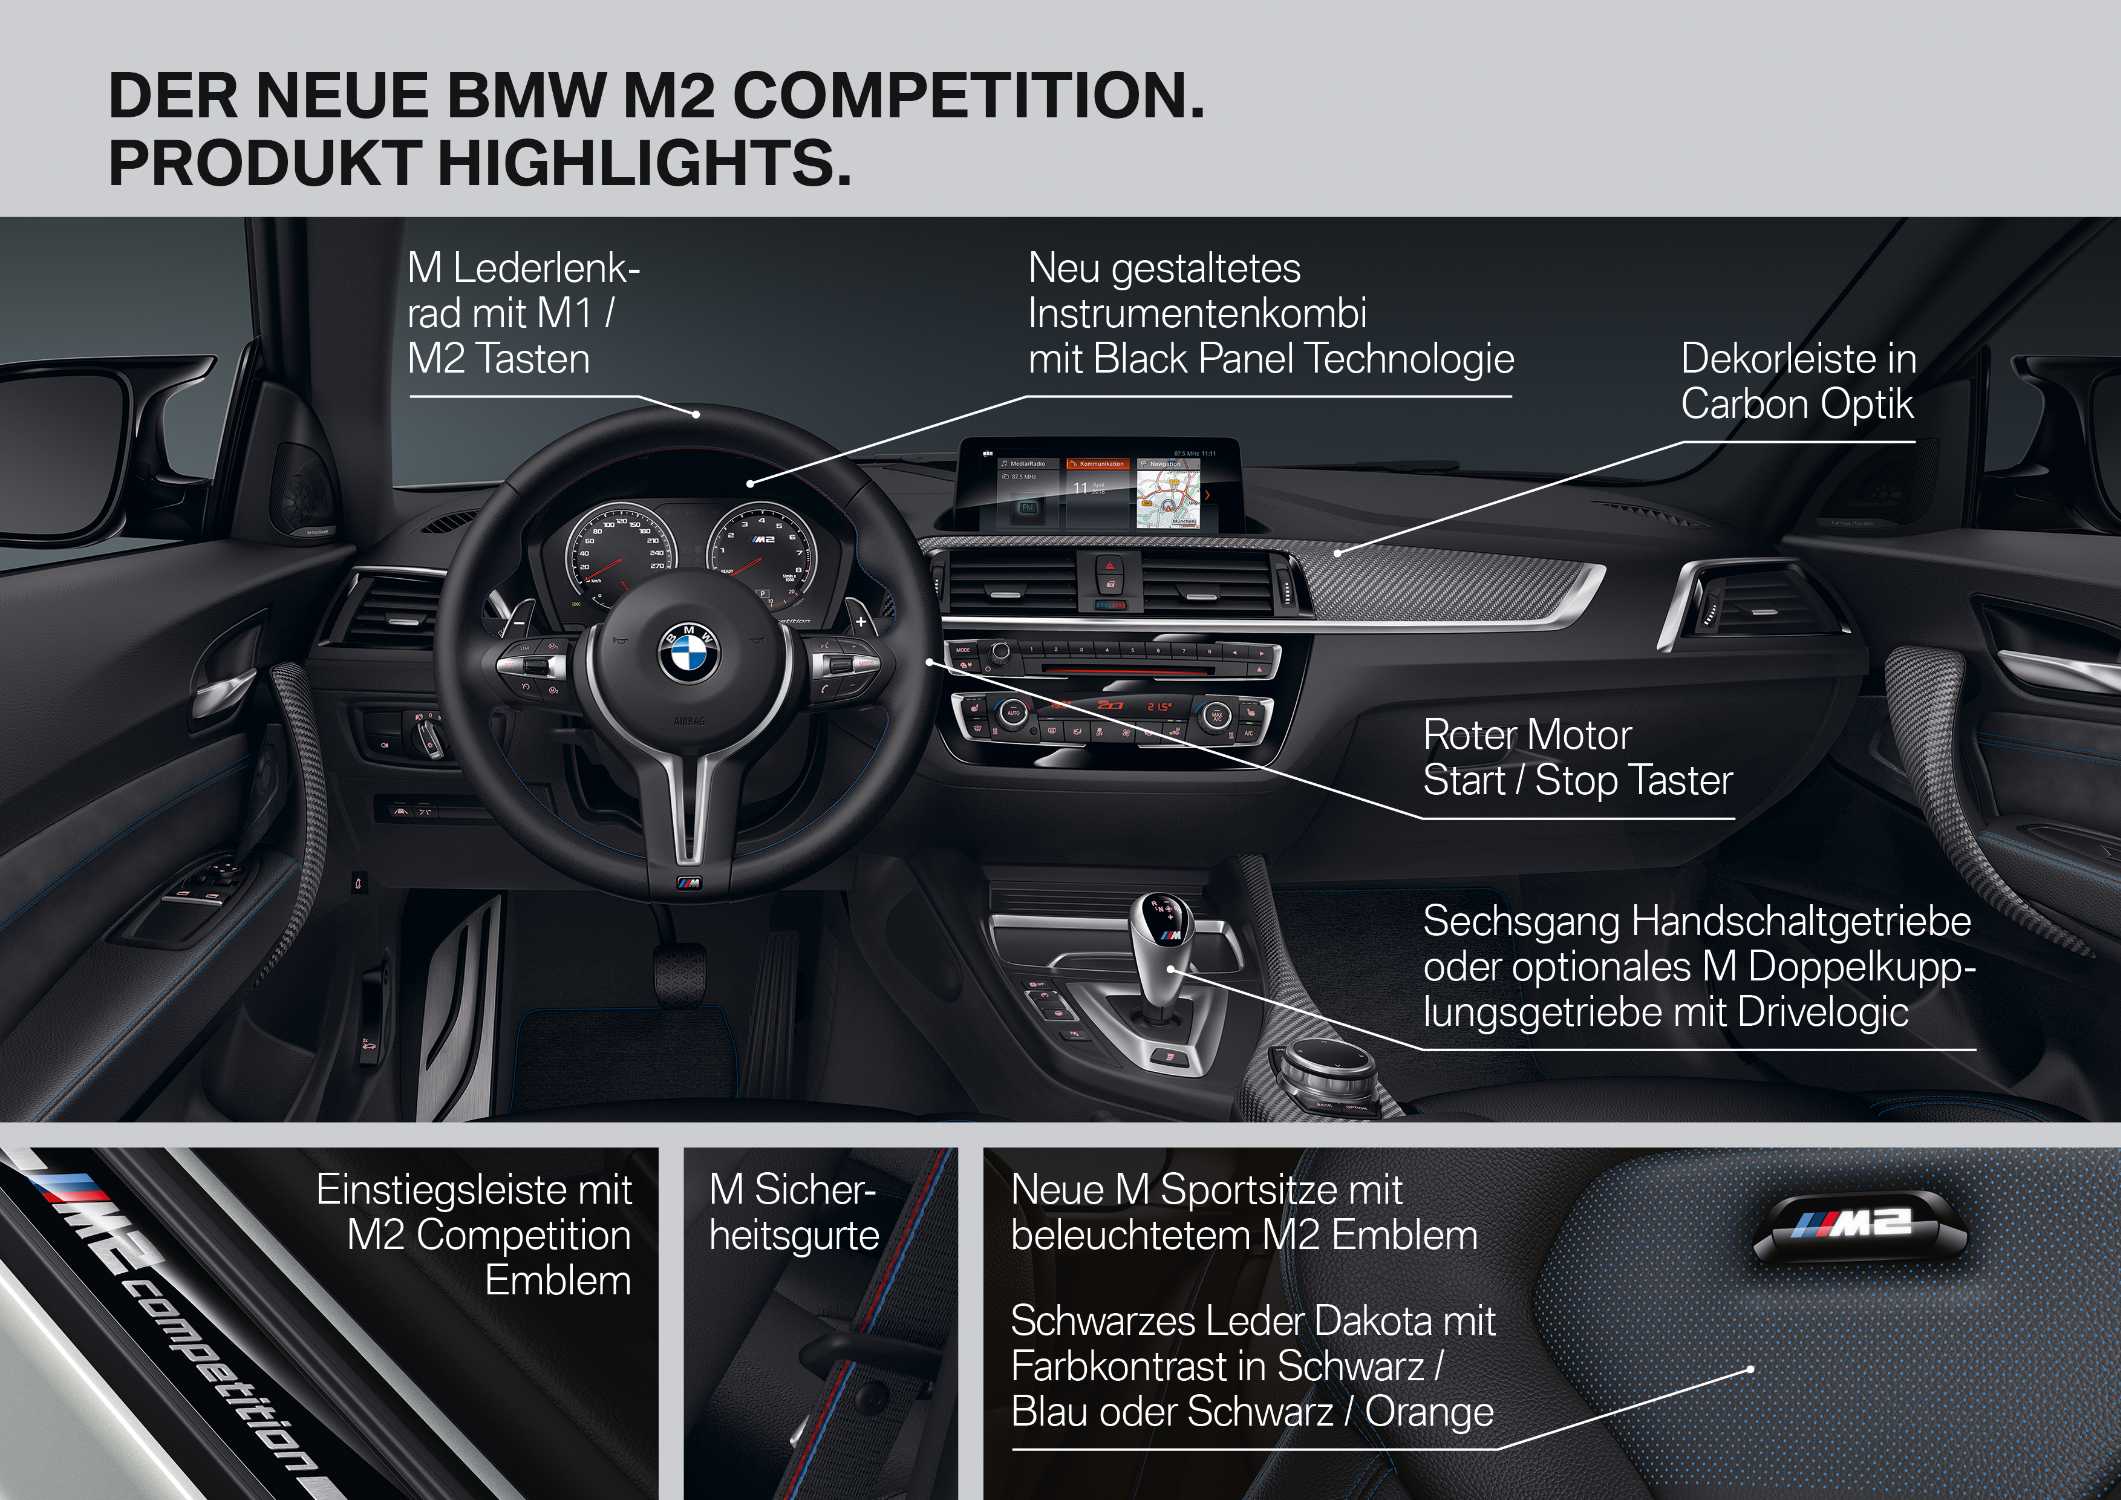 Der neue BMW M2 Competition (04/2018).